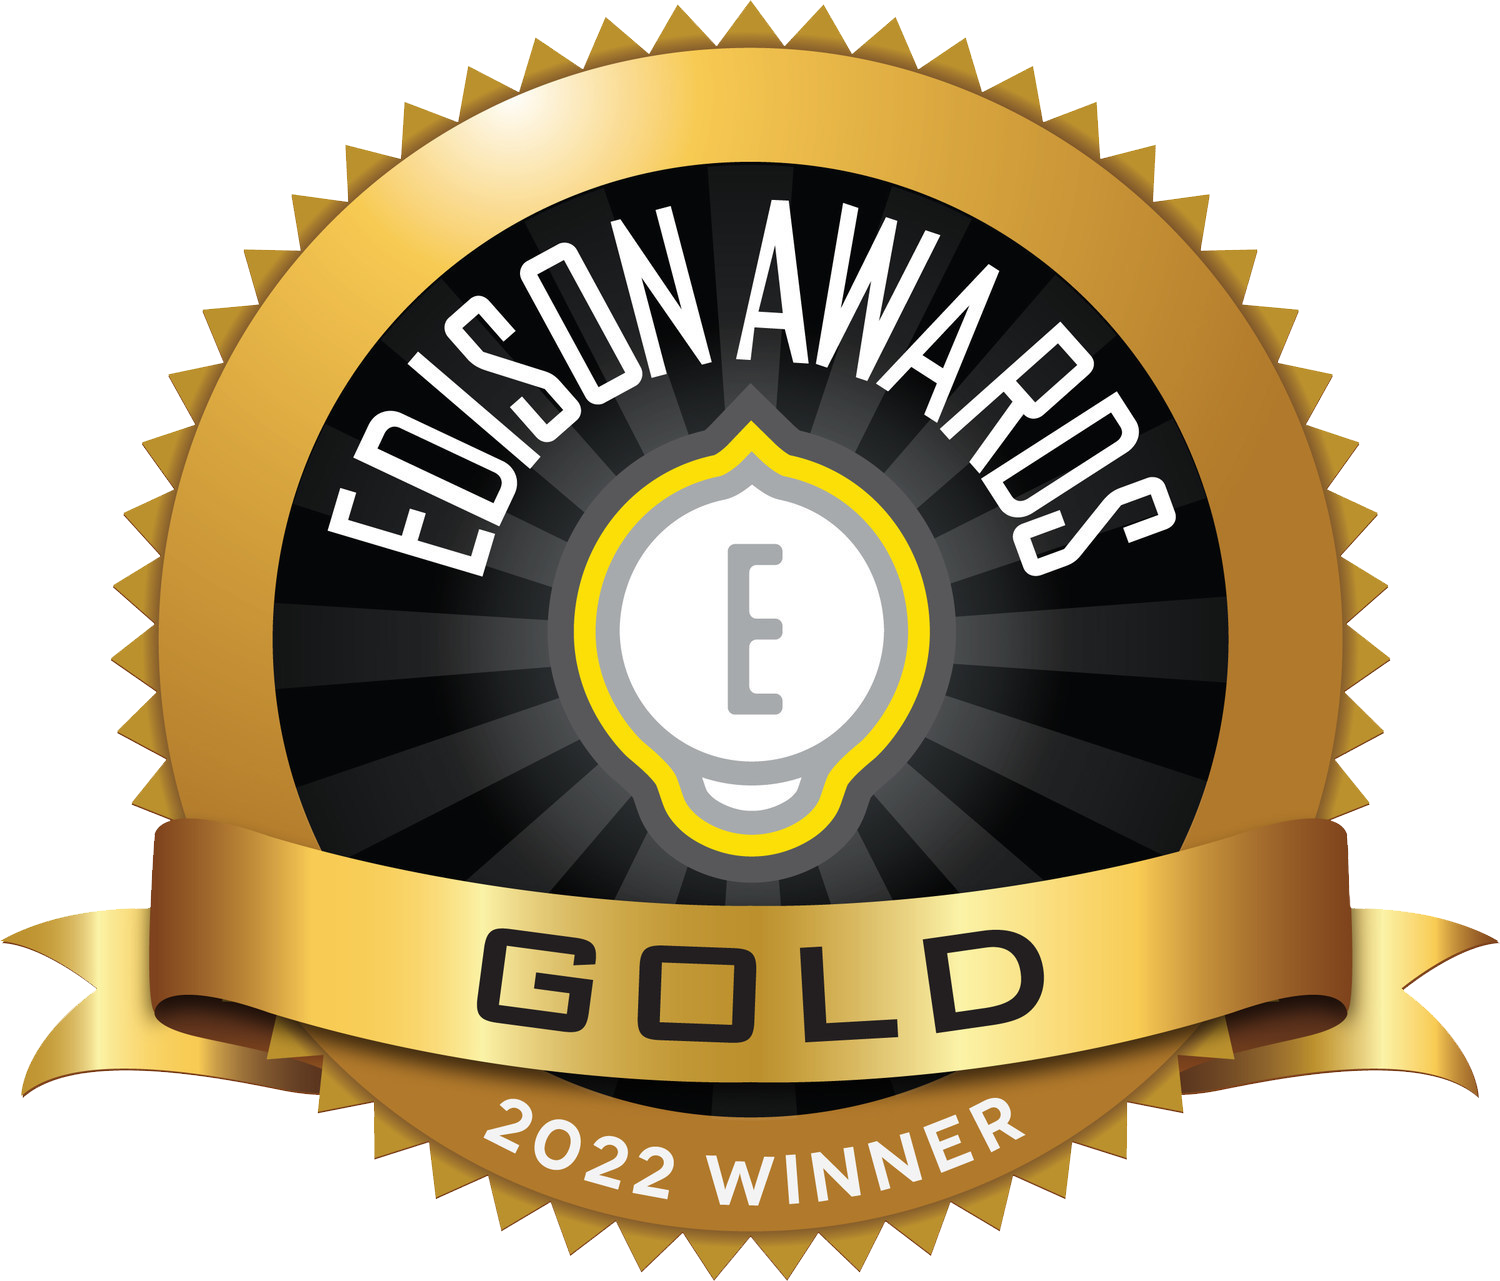 Edison Awards 2022, Gold Winner